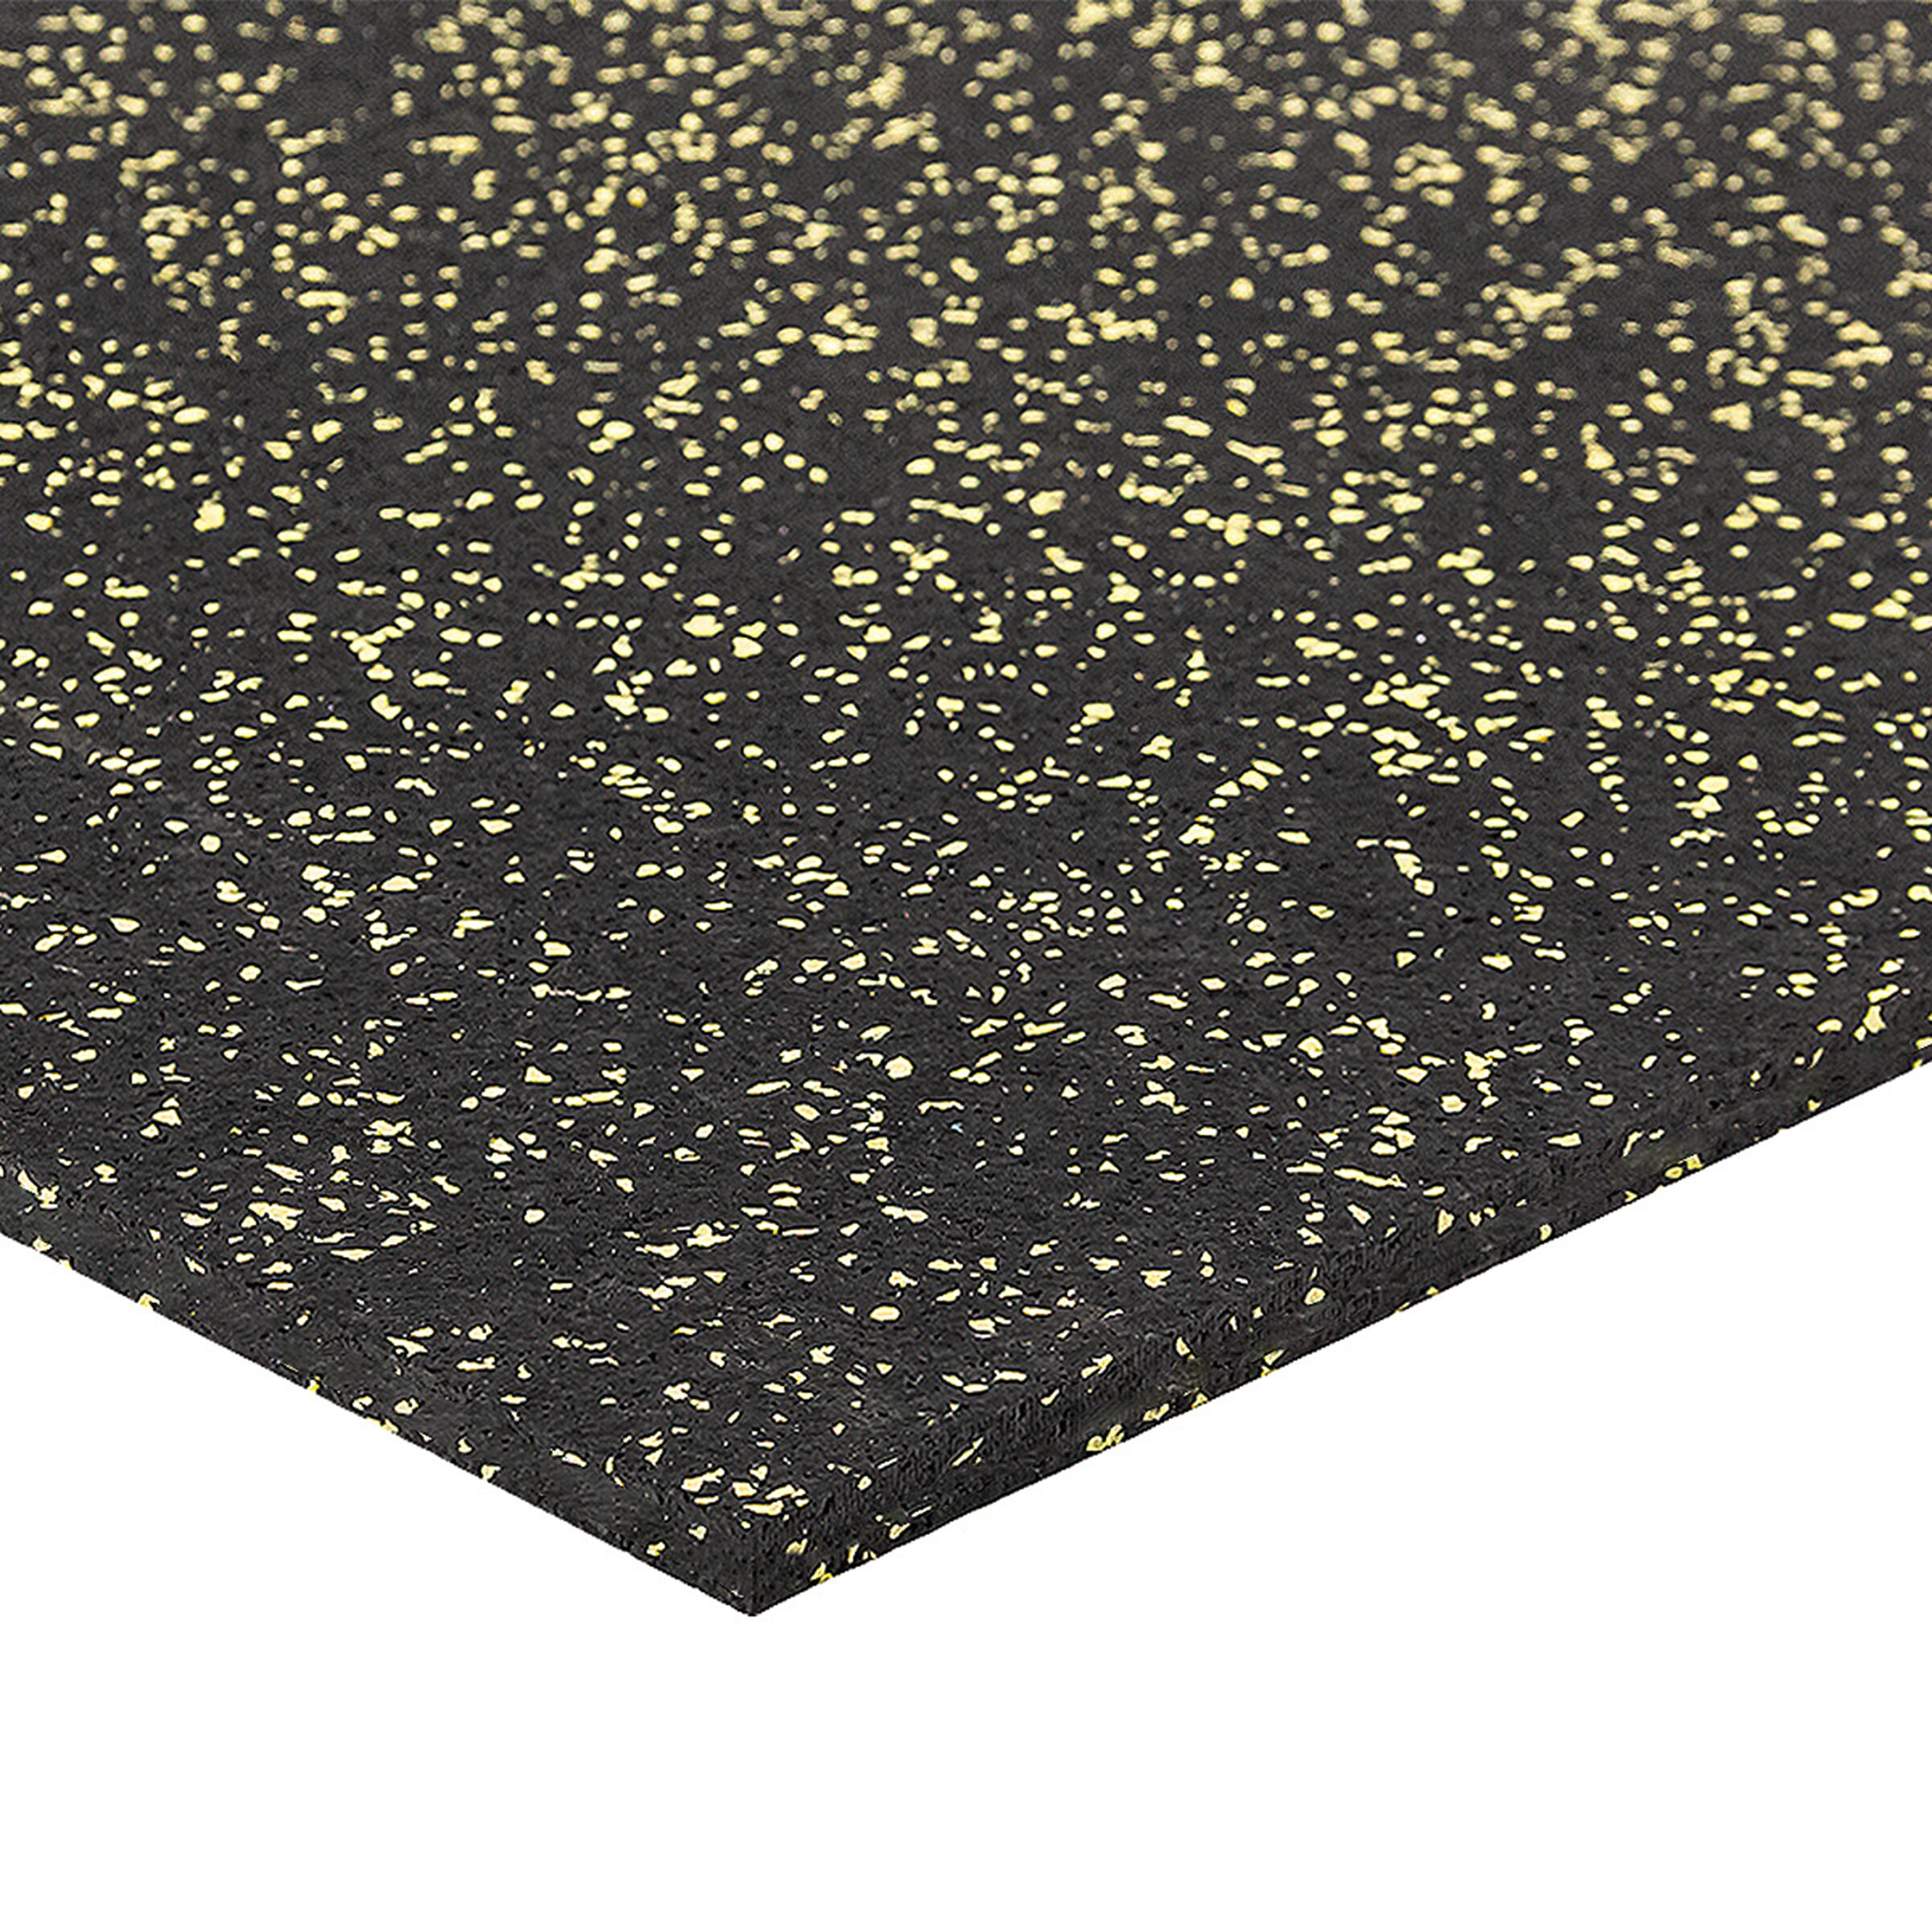 Černo-žlutá podlahová guma FLOMA FitFlo SF1050 - délka 100 cm, šířka 100 cm, výška 1 cm